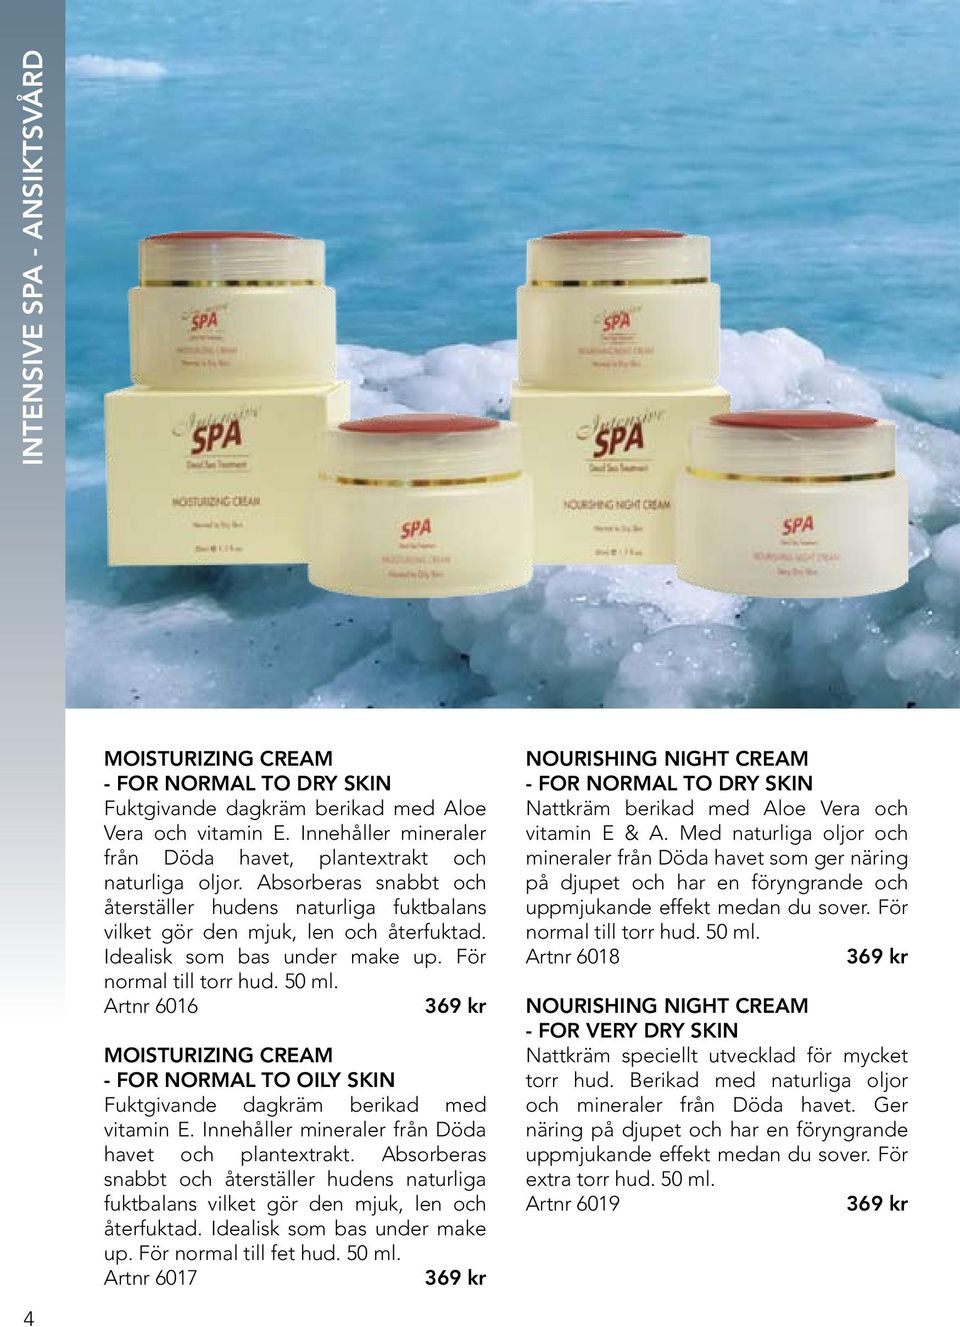 Artnr 6016 369 kr Moisturizing Cream - FOR Normal TO OILY SKIN Fuktgivande dagkräm berikad med vitamin E. Innehåller mineraler från Döda havet och plantextrakt.